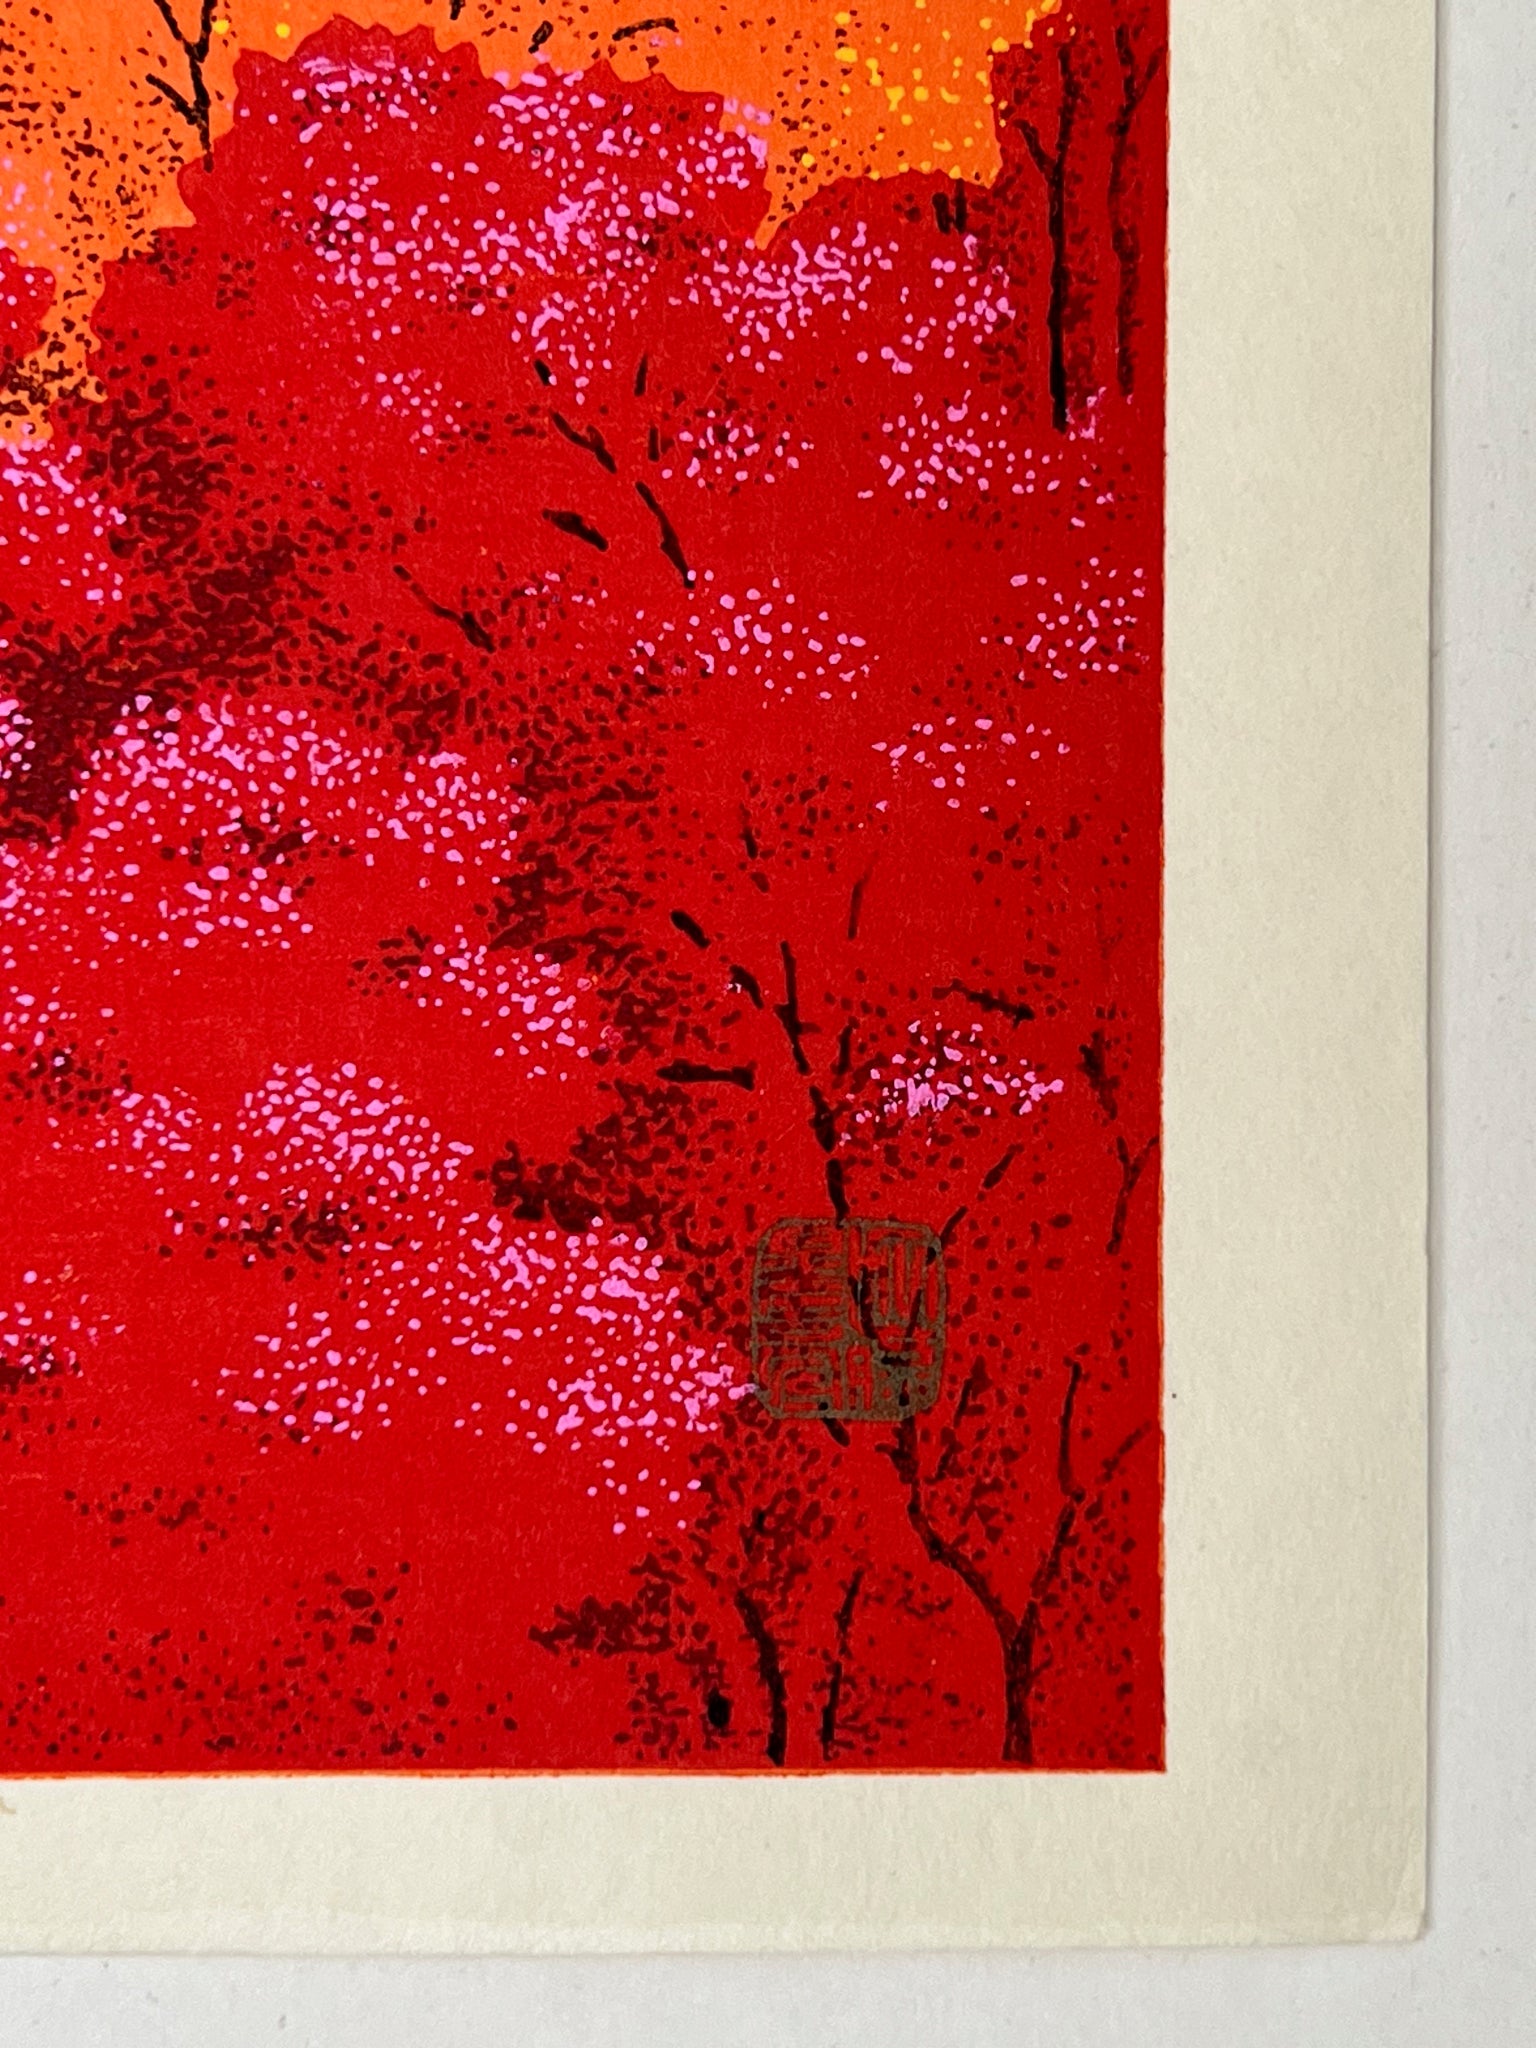 Estampe Japonaise contemporaine de Teruhide Kato Temple Tofuku derriere les érables rouges et oranges à l'automne, le sceau de l'artiste